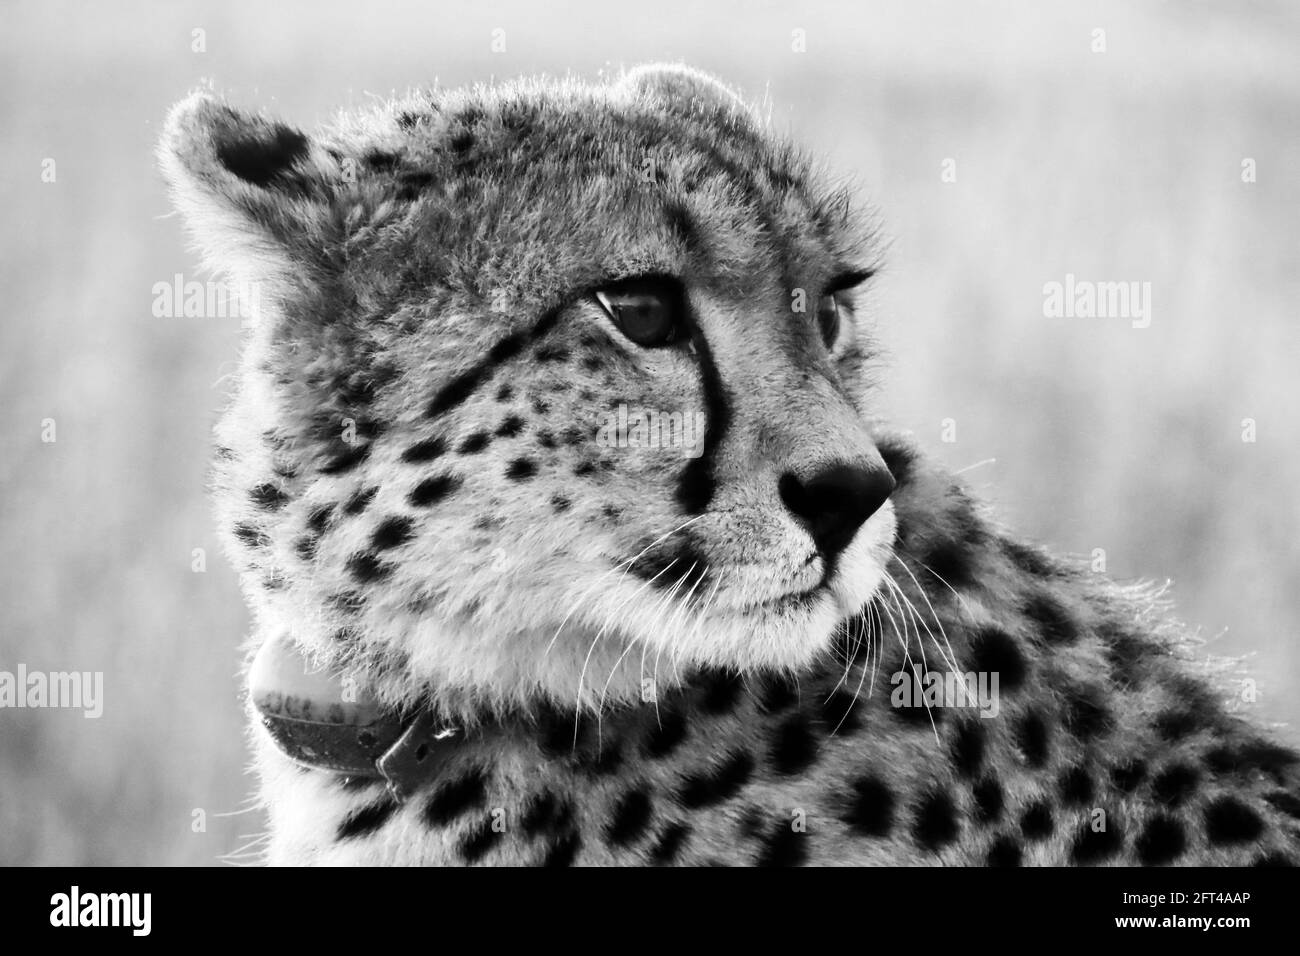 En voie de disparition, le cheetah féminin en monochrome Banque D'Images